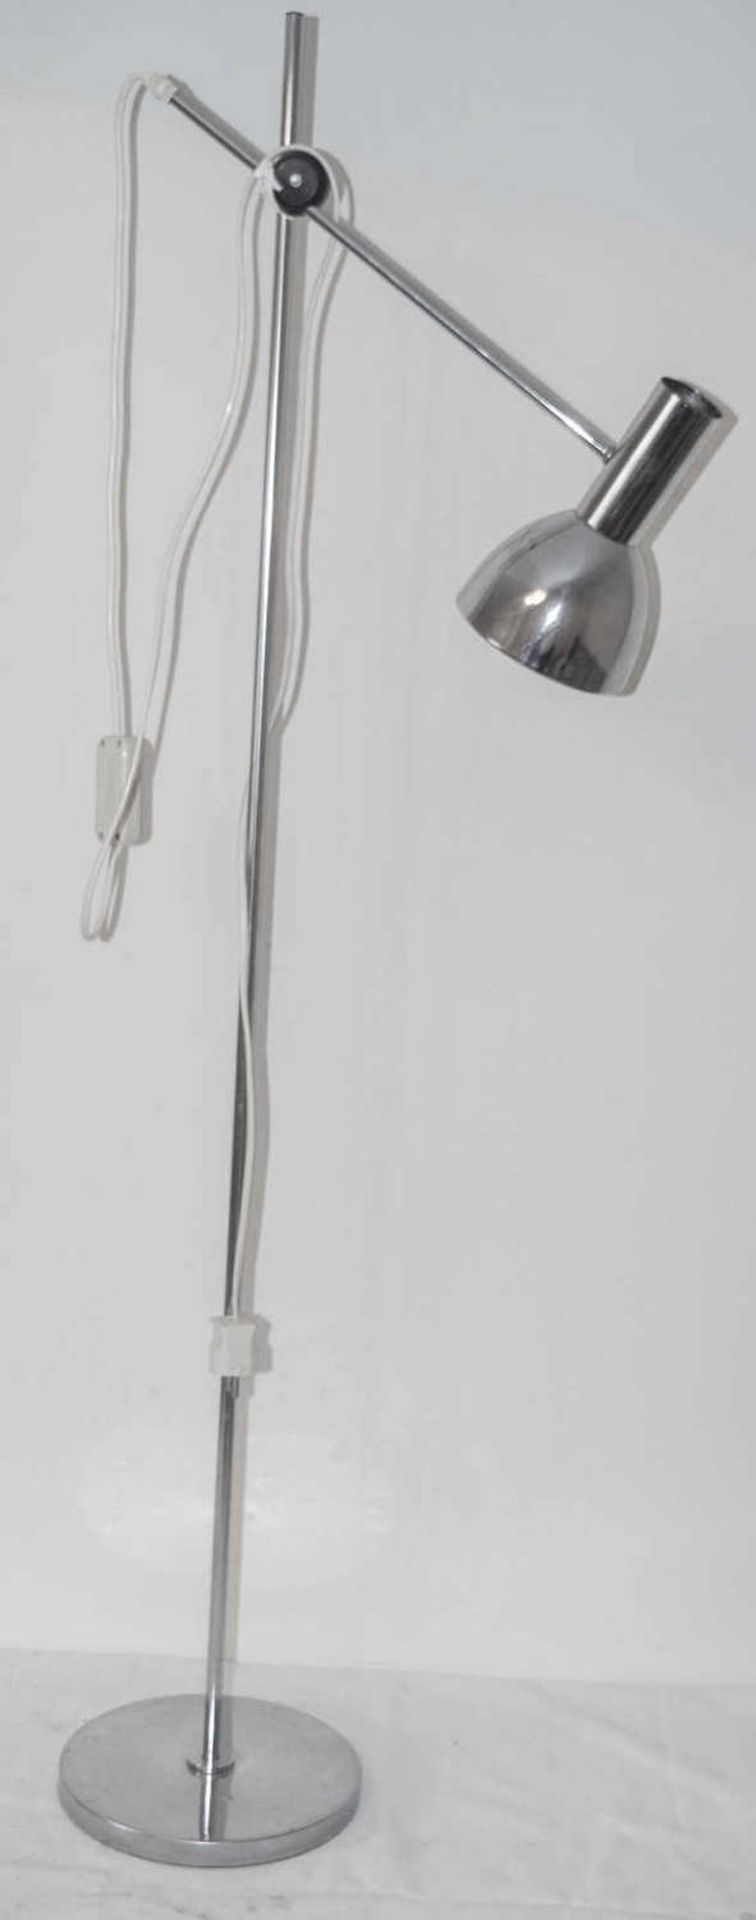 Stehlampe, Chrom, 70er Jahre - Design. Höhe: ca. 130 cm. Funktion geprüft. NUR ABHOLUNG - KEIN